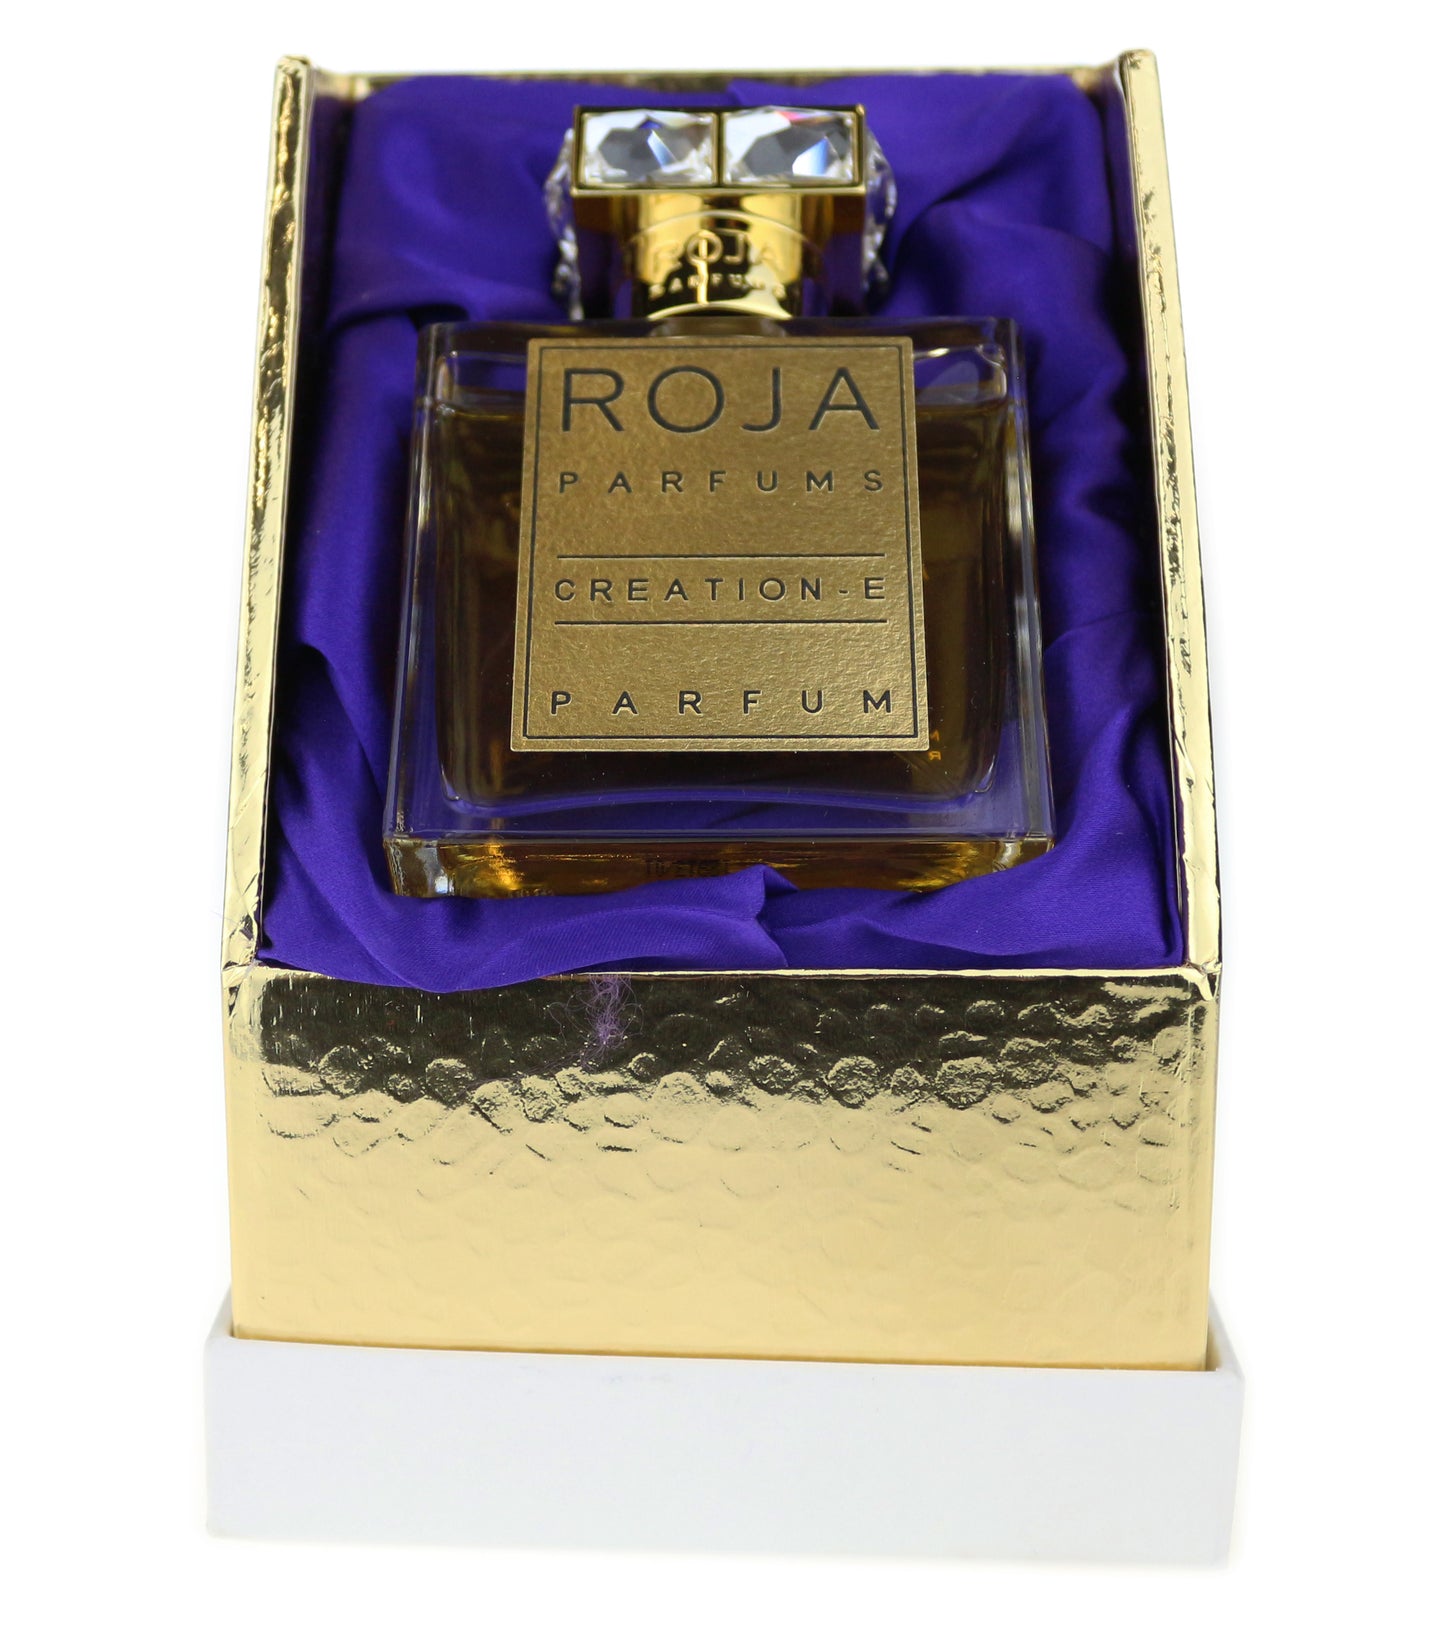 Roja Dove 'Creation-E Pour Femme' Parfum 1.7oz InBox 'Paper label,No Cellophane'